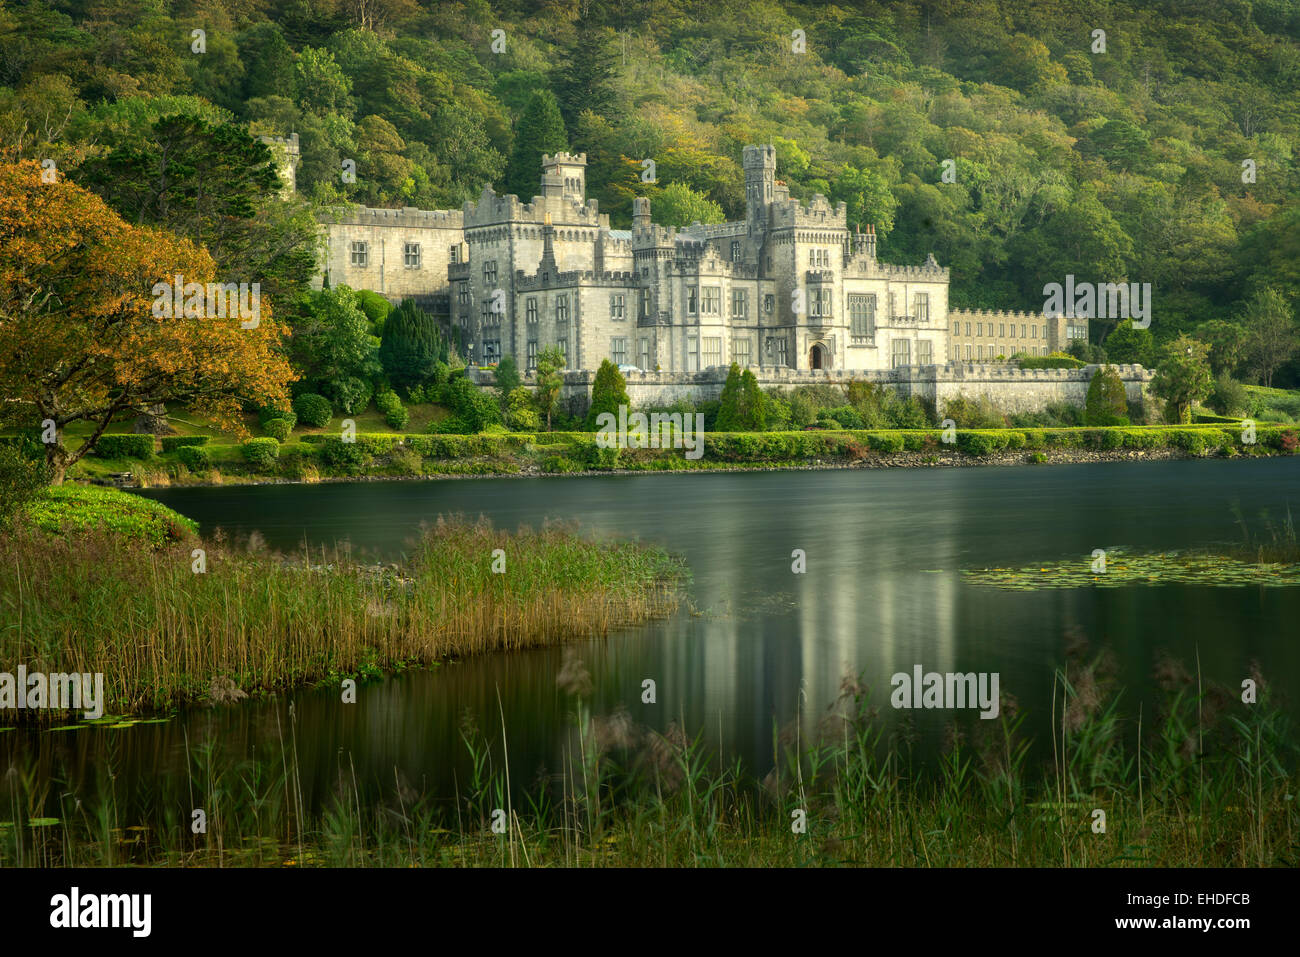 La abadía de Kylemore y el lago. Región de Connemara, Irlanda Foto de stock